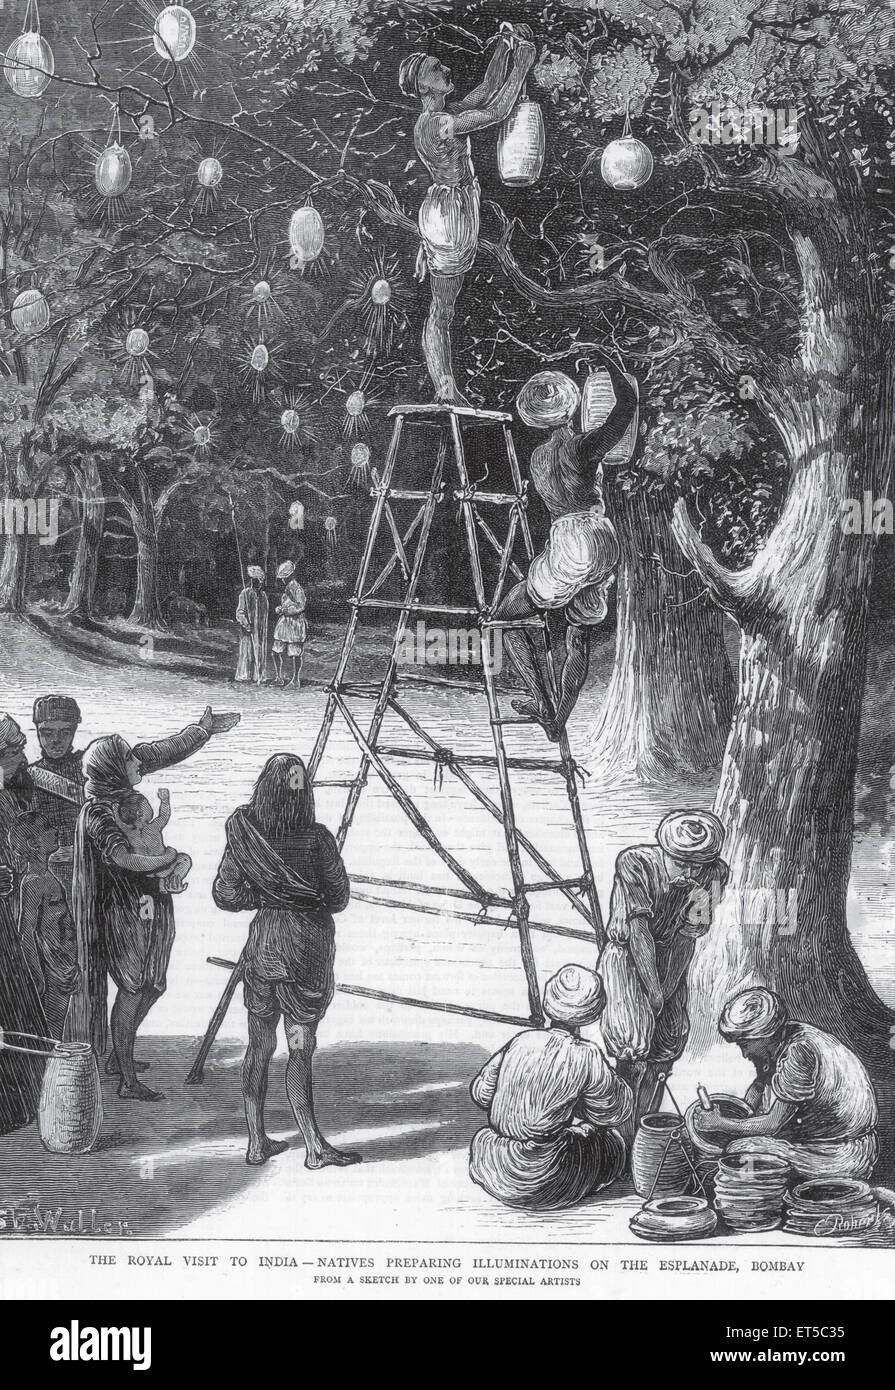 Redevance sur Tour, hommes pendent des lanternes en papier sur les arbres, Esplanade ; Bombay ; Mumbai ; Maharashtra ; Inde ; ancienne gravure du XIXe siècle Banque D'Images